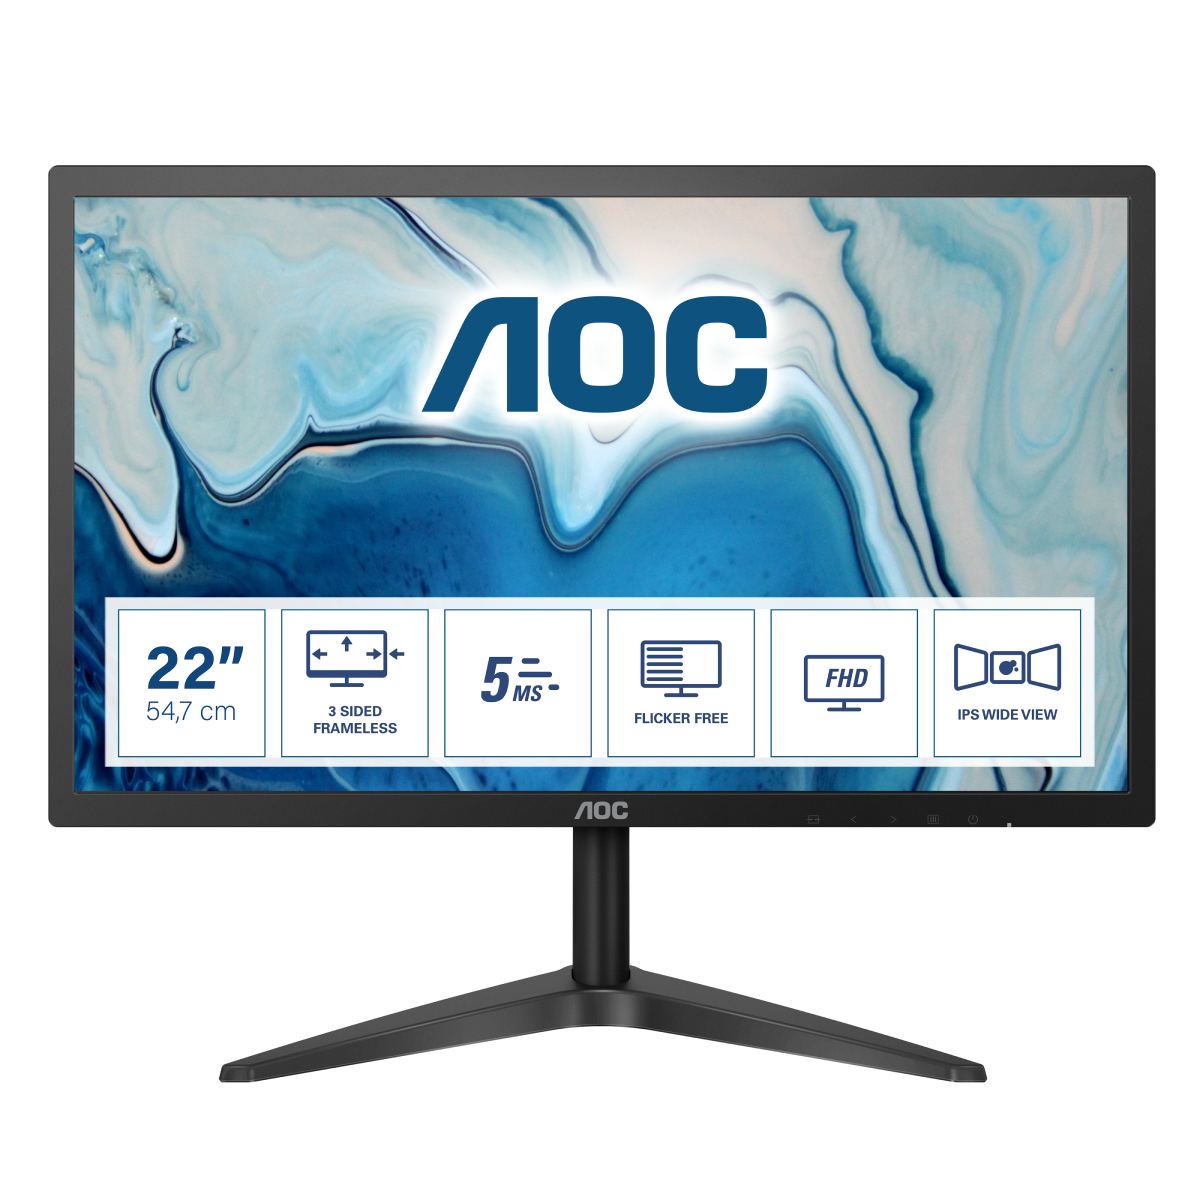 Монитор для дома и офиса AOC 22B1HS в официальном интернет магазине AGONBYAOC.ru (AOC Россия)